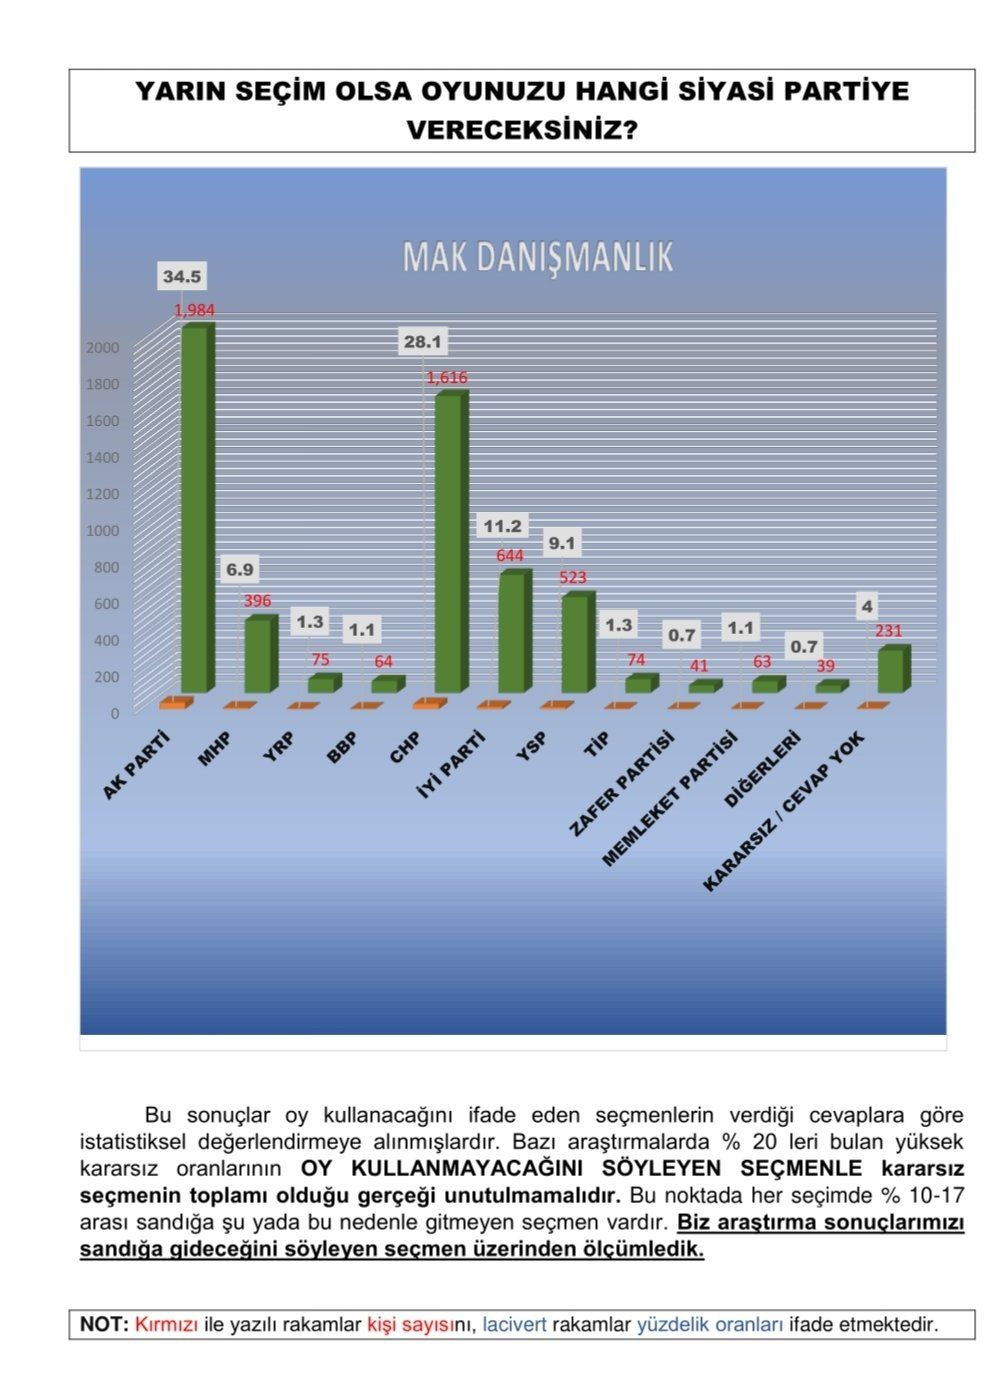 MAK Danışmanlık nisan anketi: Kılıçdaroğlu yüzde 4.1 önde - Sayfa 4